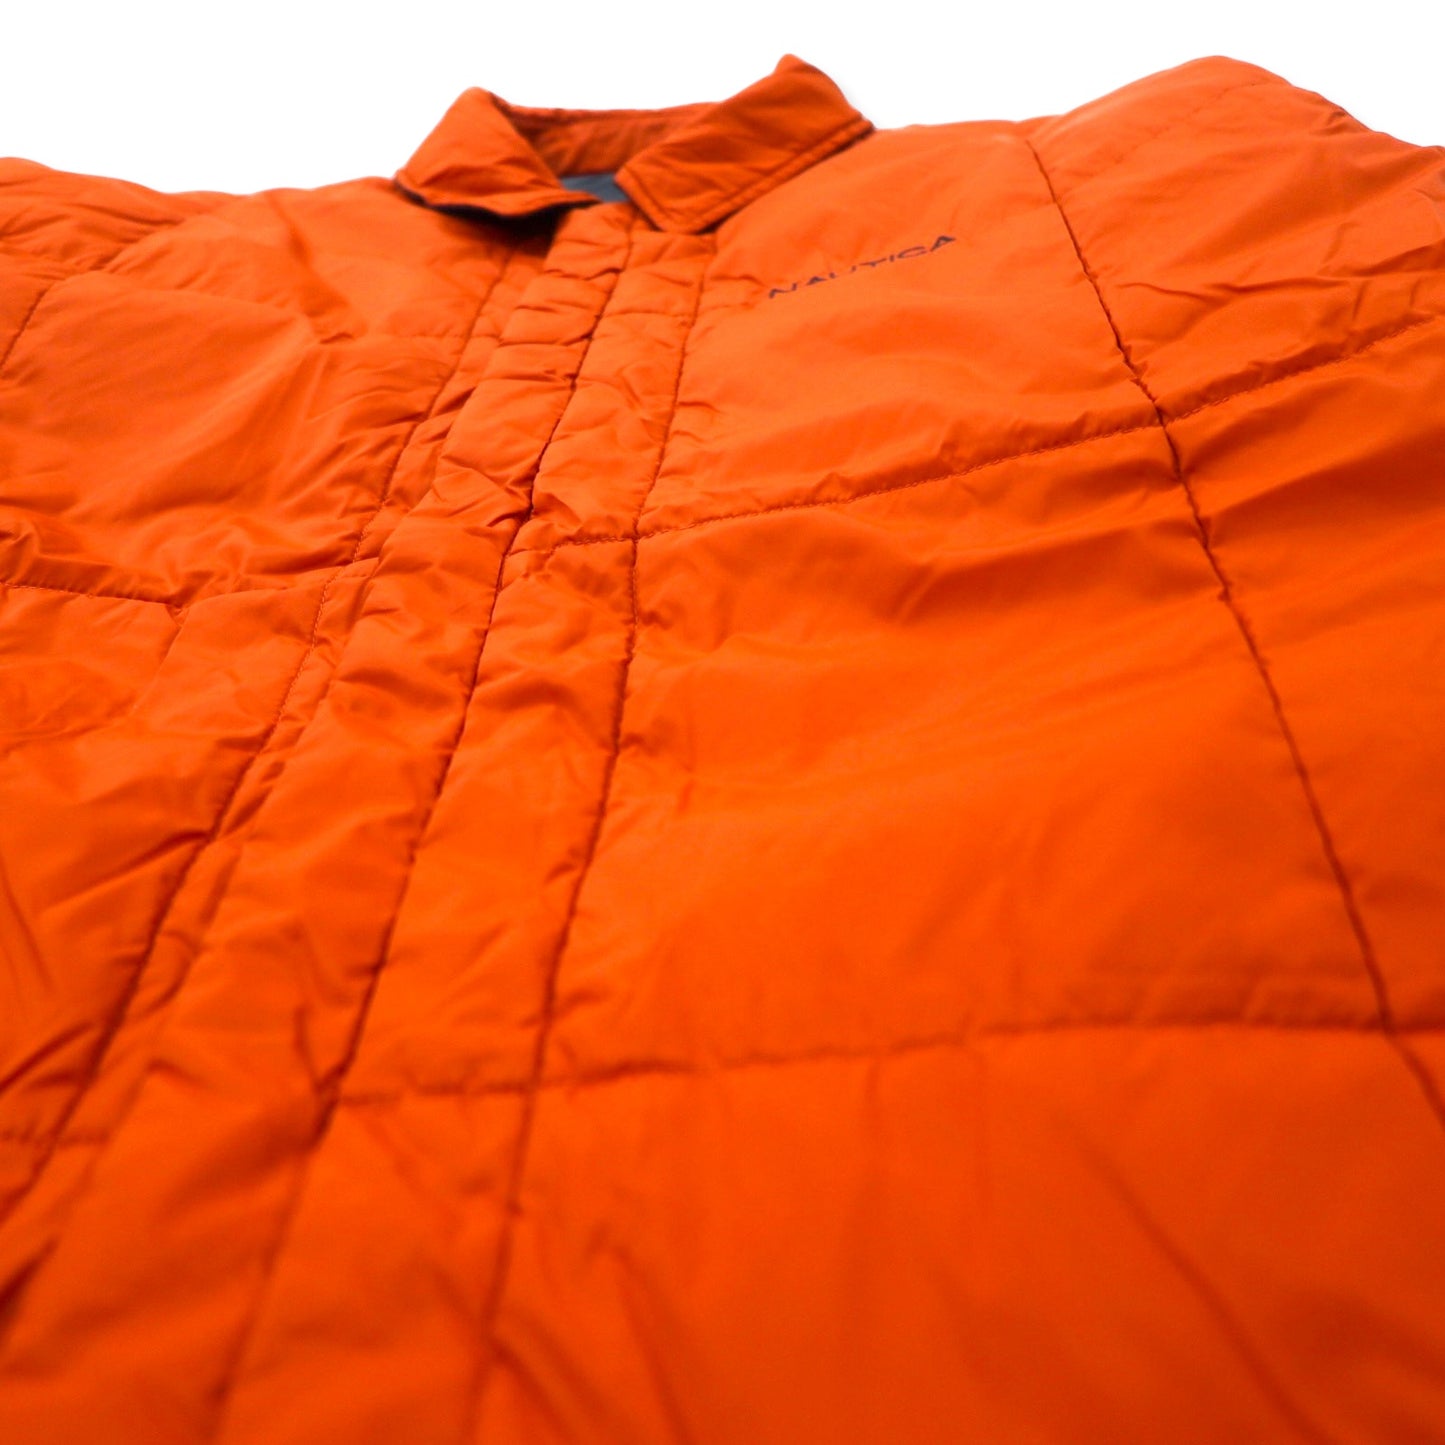 NAUTICA リバーシブル インサレーション キルティングジャケット 中綿 L グレー オレンジ ナイロン THERMOLITE ACTIVE